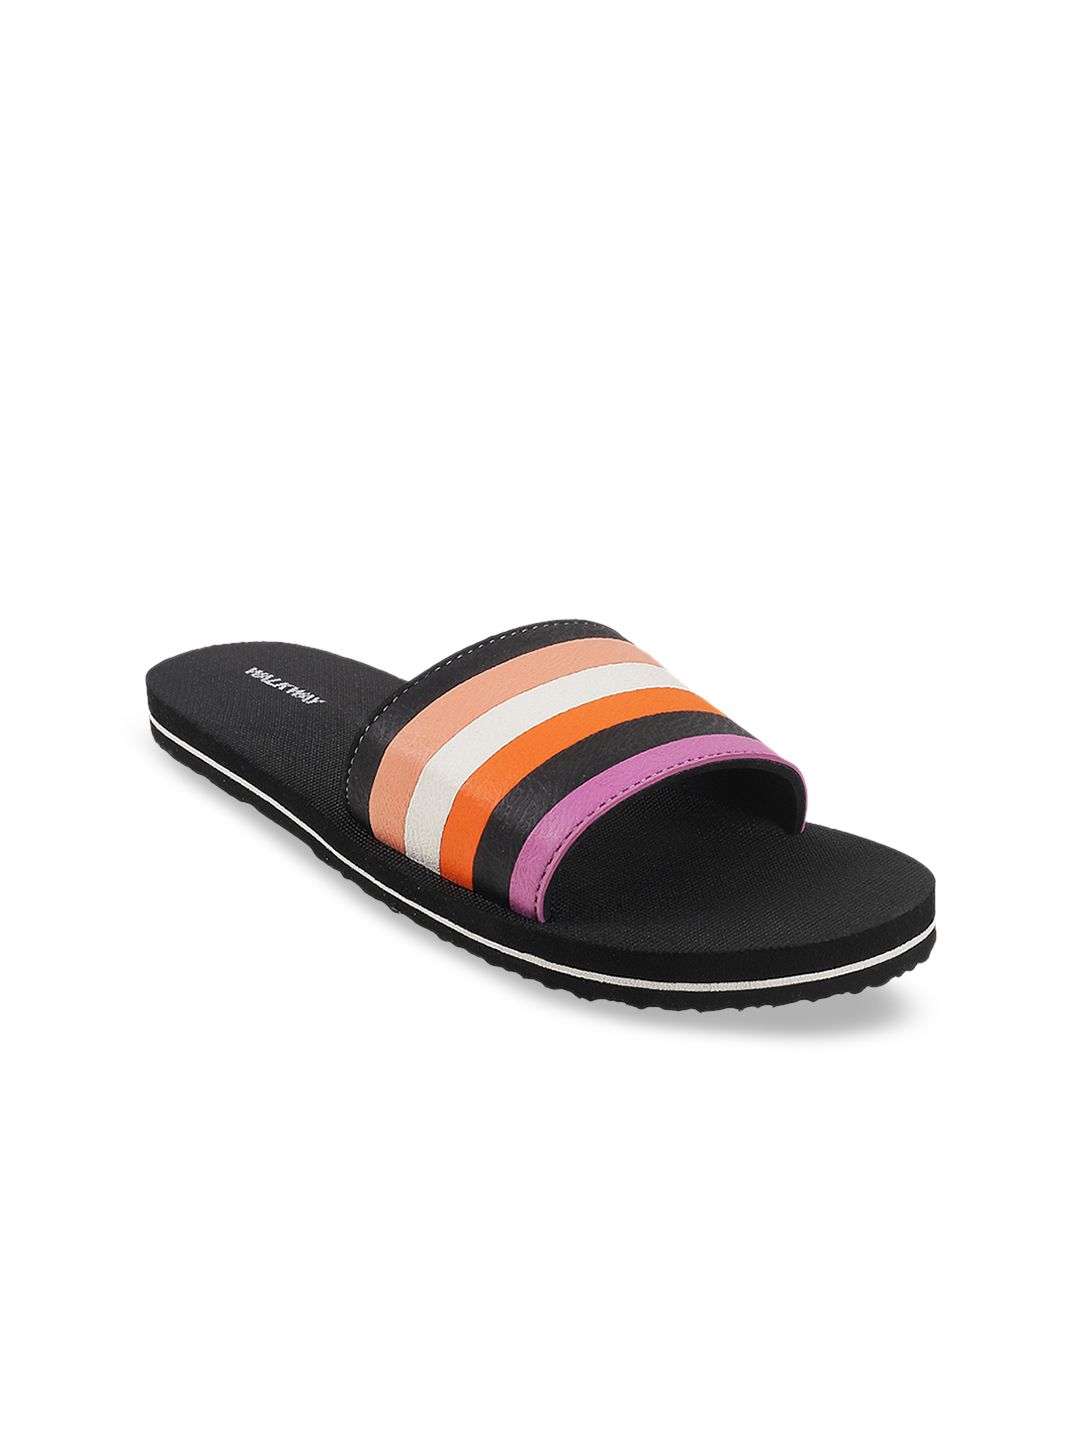 WALKWAY by Metro Women Orange & White Striped Thong Flip-Flops Price in India